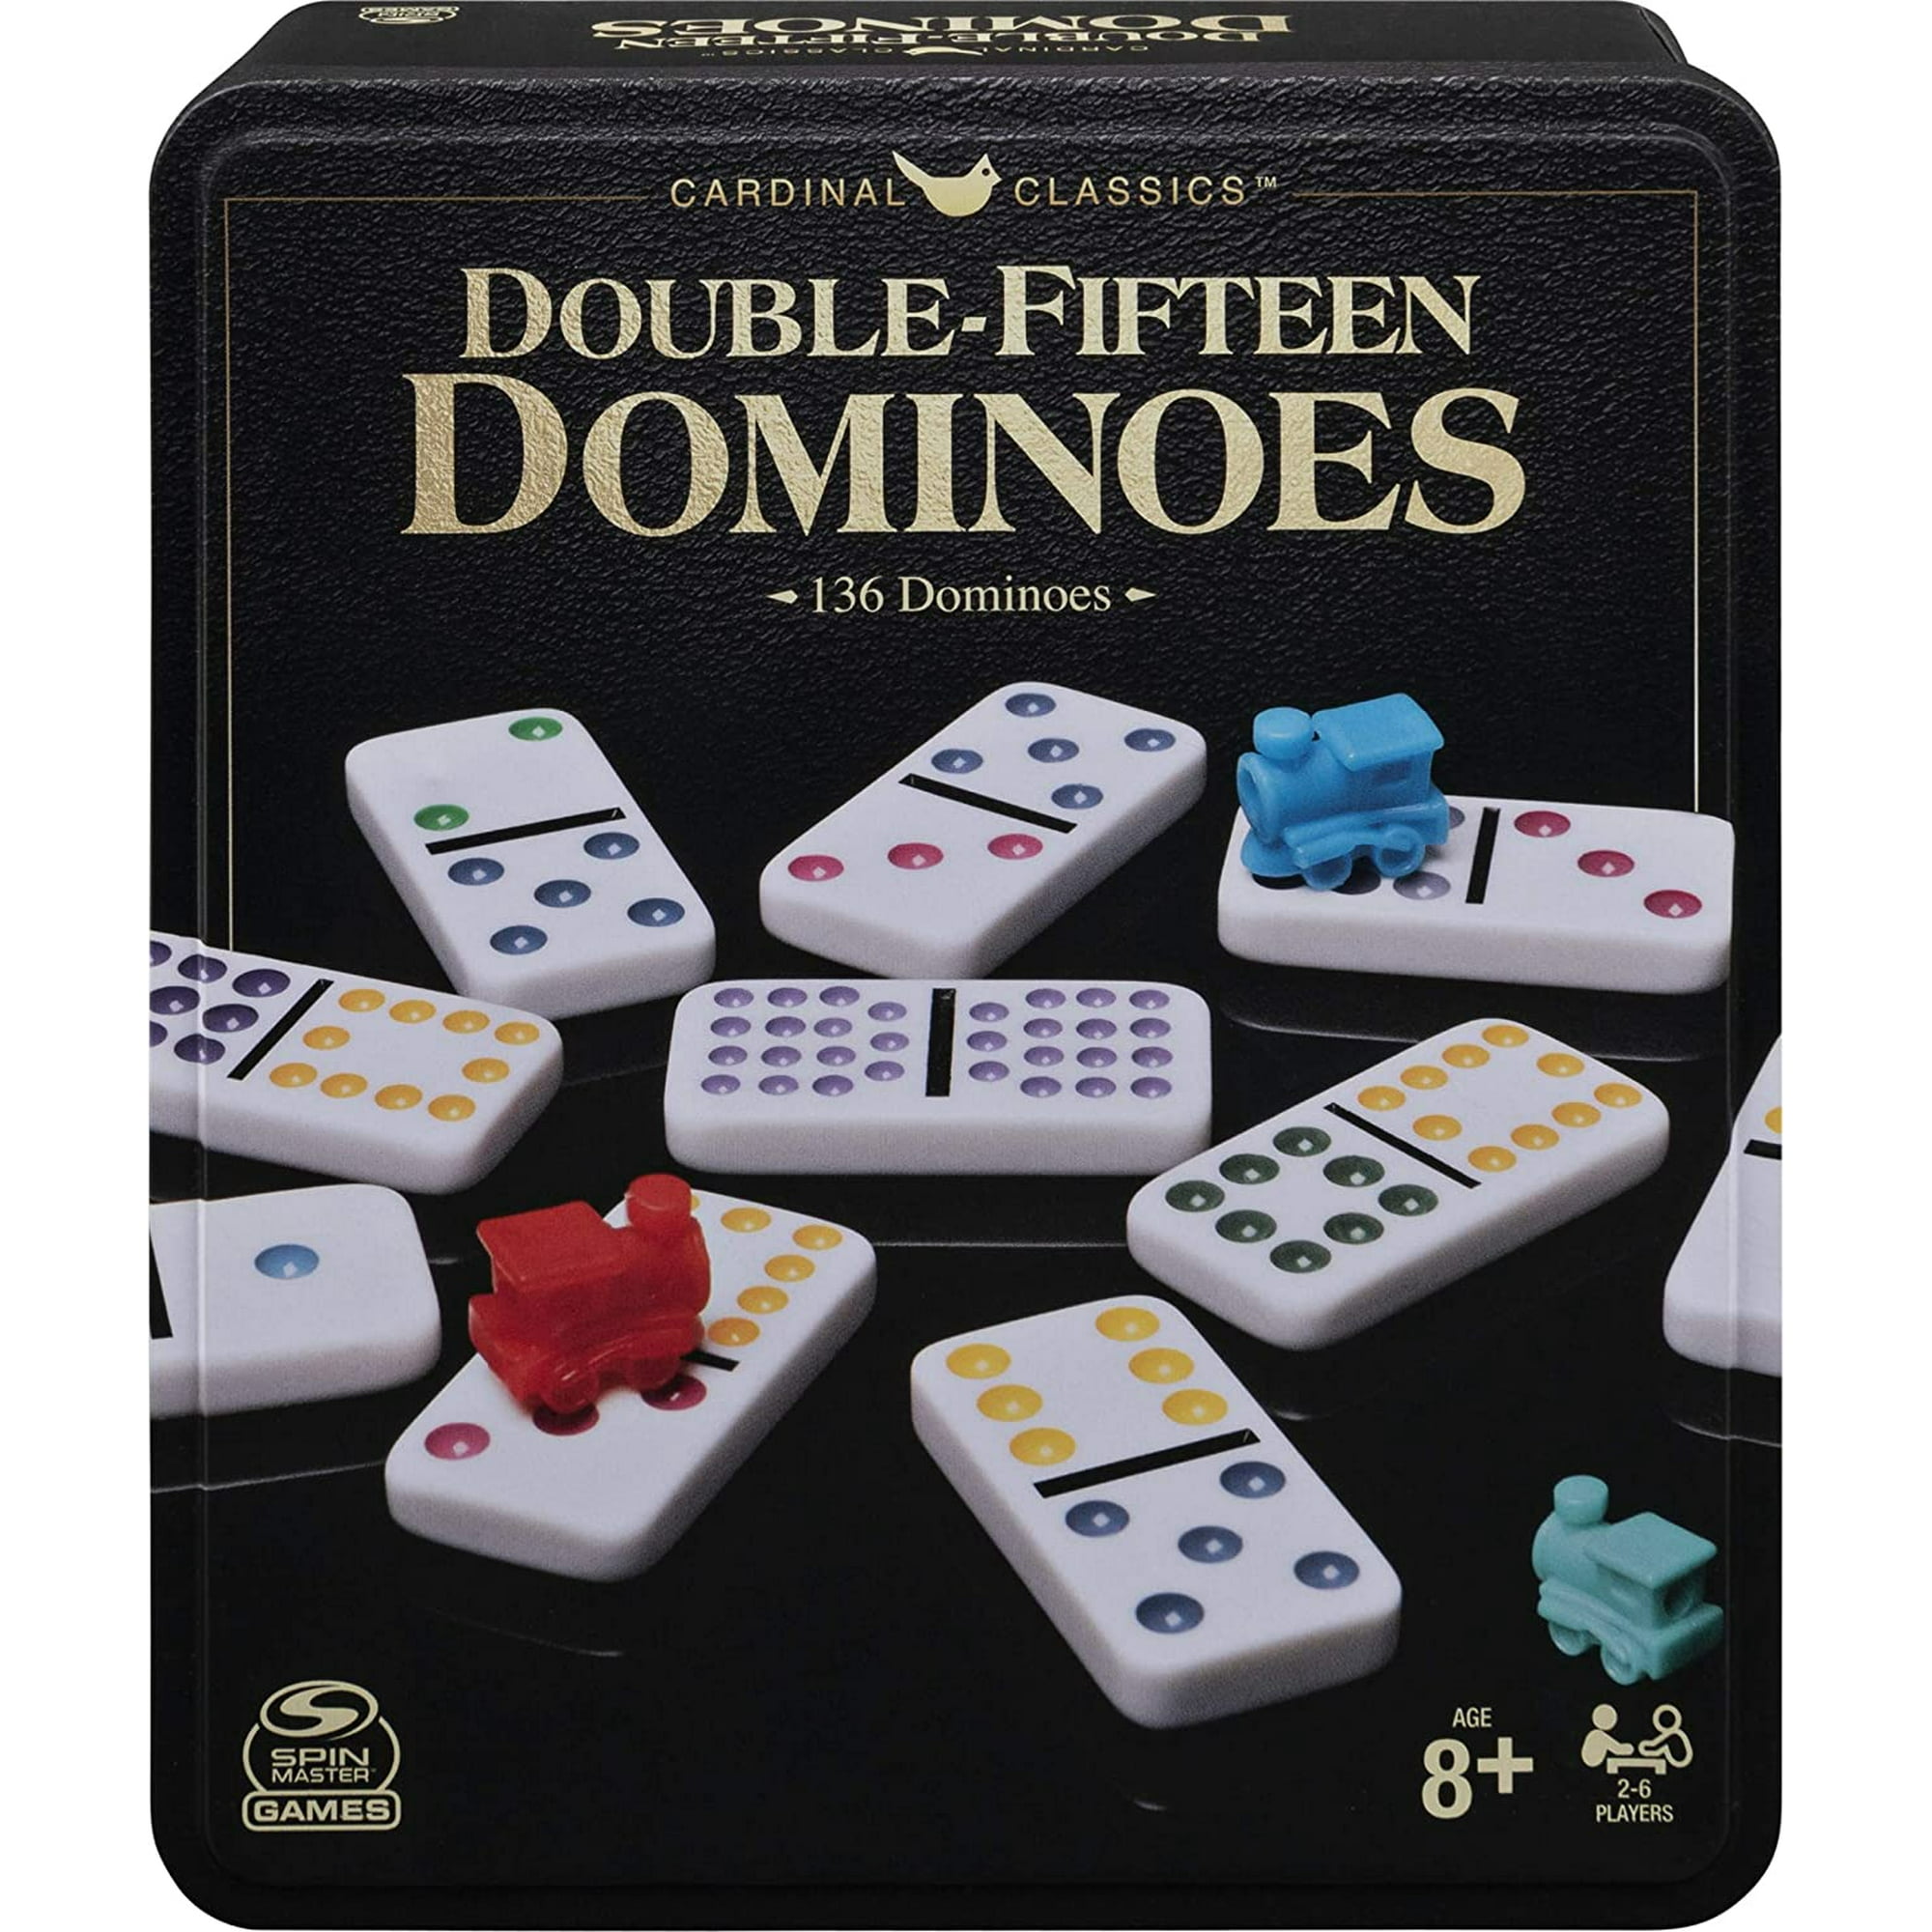 Domino profesional Juegos, videojuegos y juguetes de segunda mano